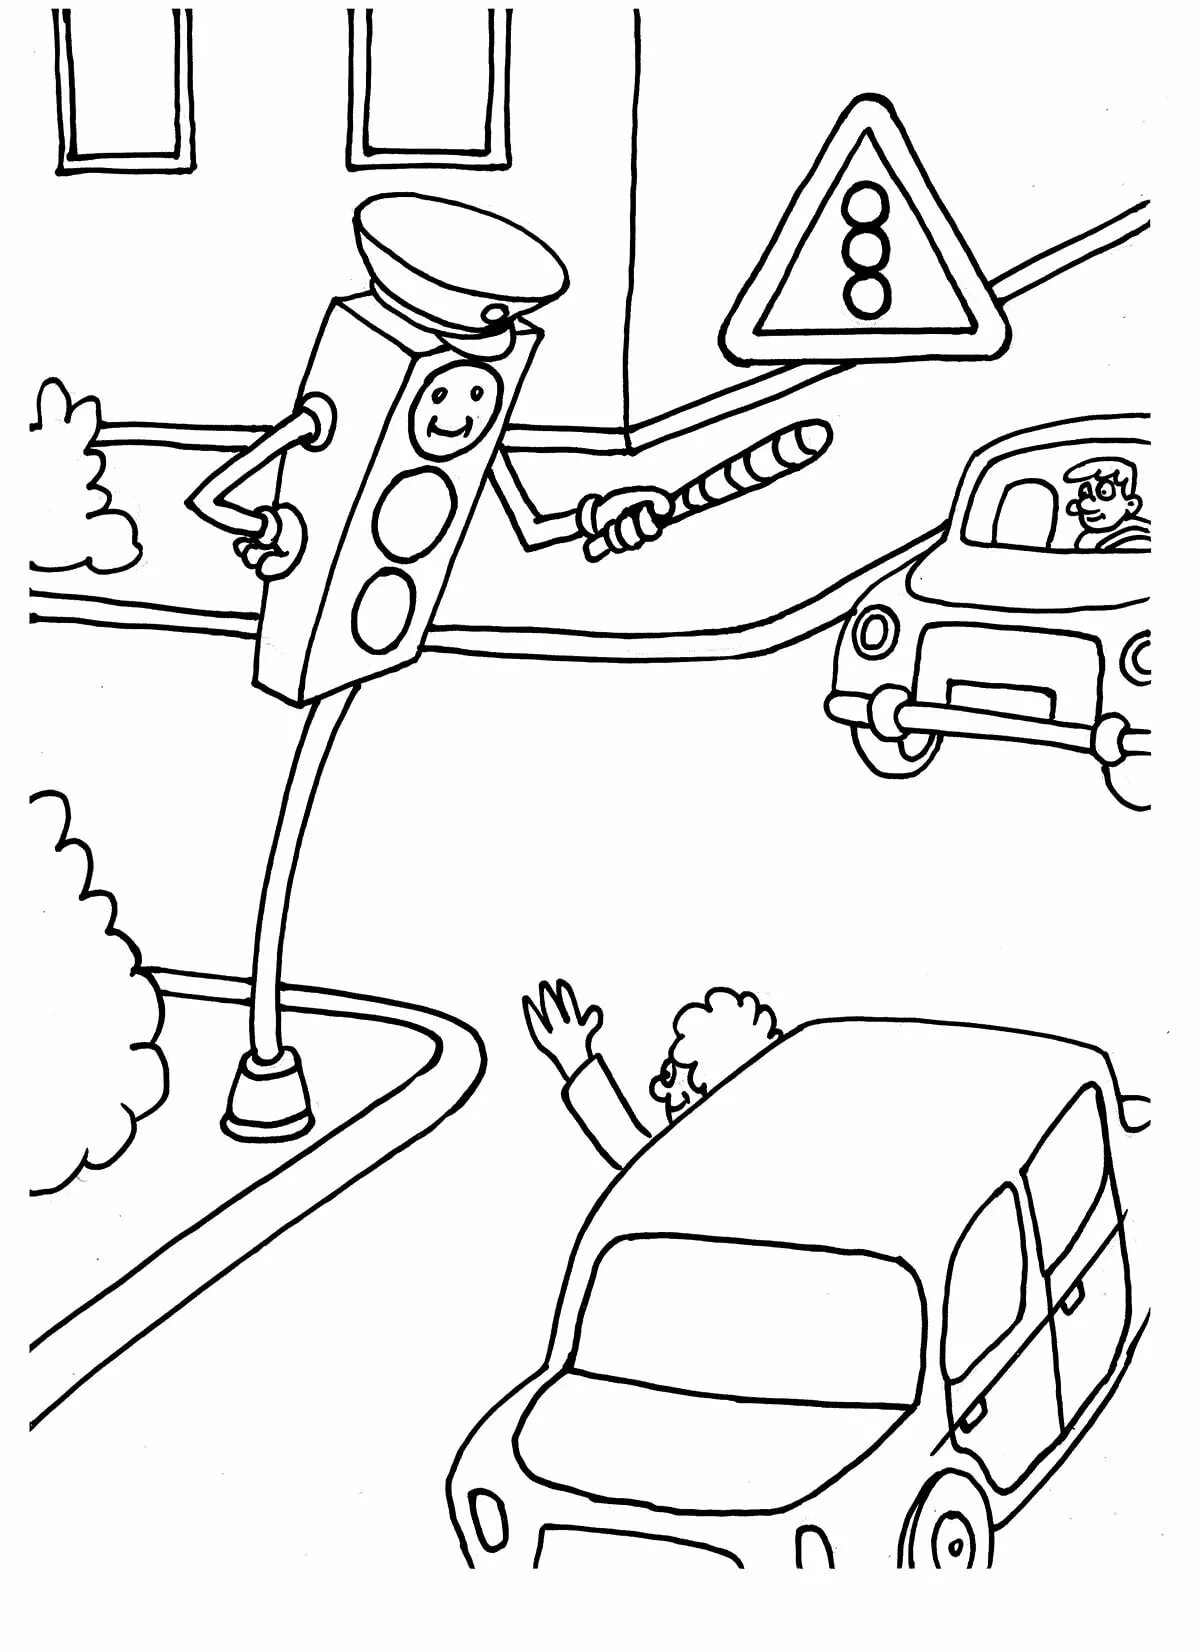 Безопасность на дороге рисунок для детей - 56 фото